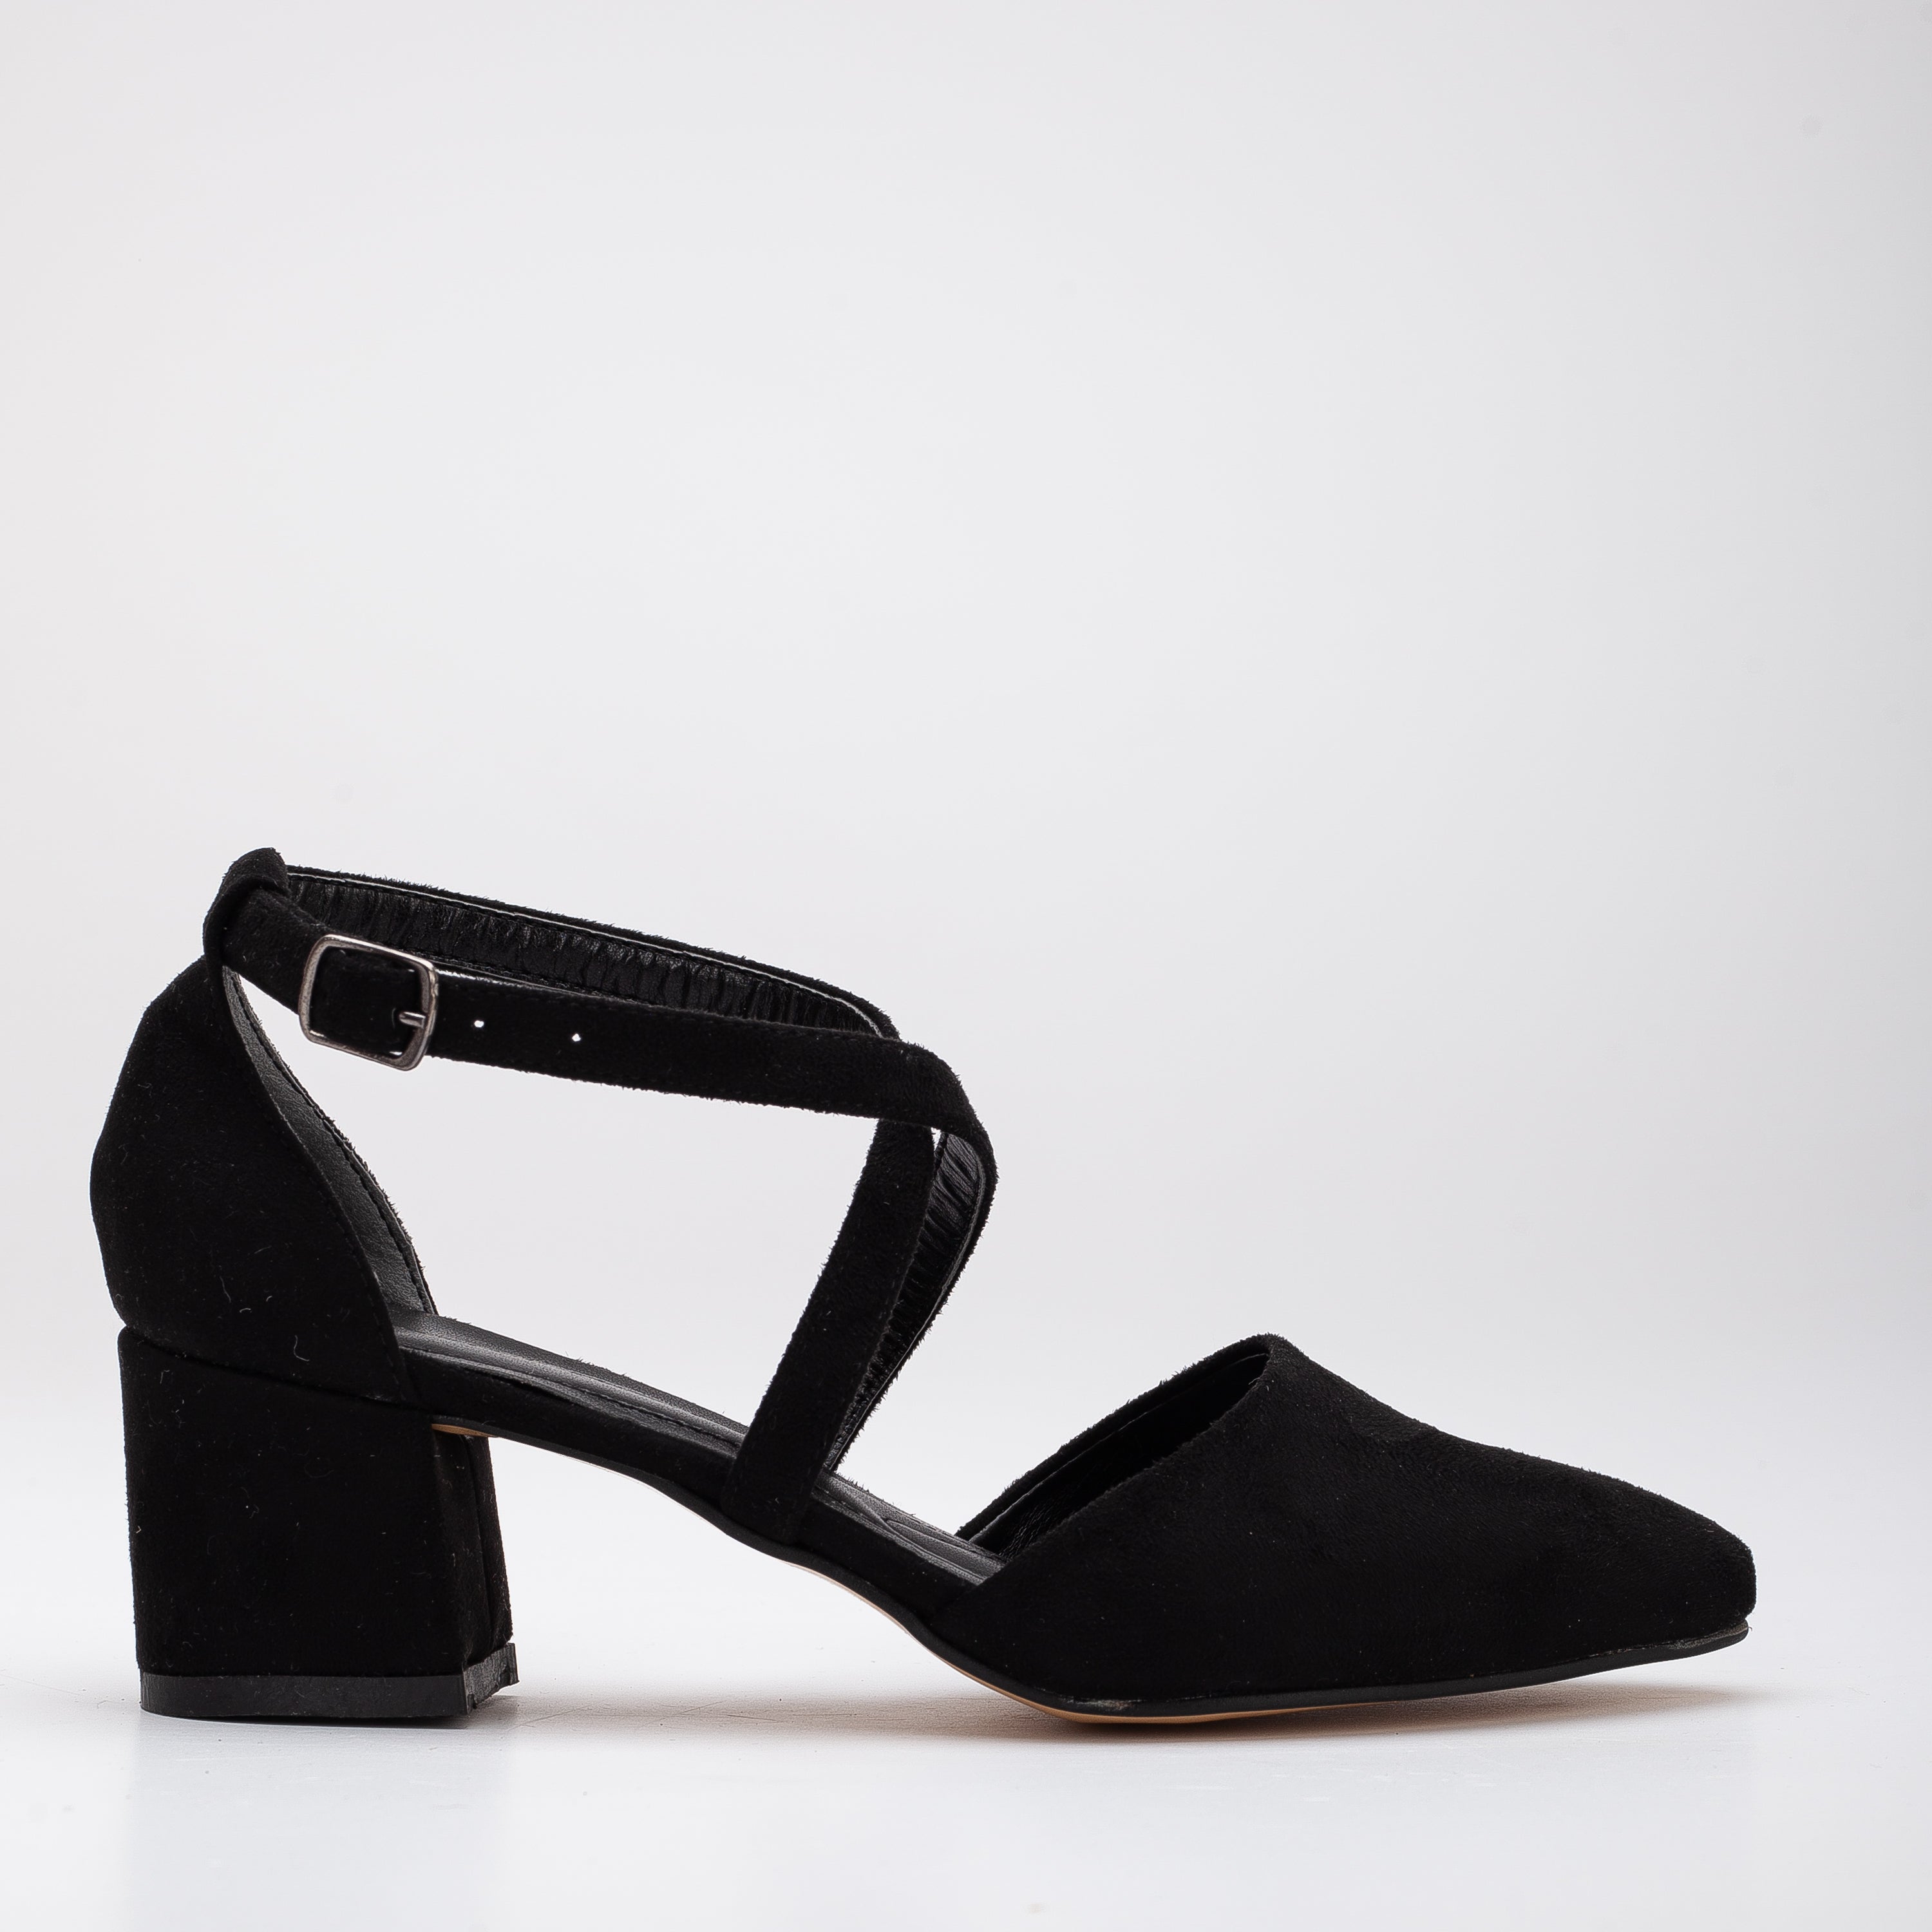 Black Suede Heels, Black Suede Shoes, Mary Jane Shoes, Black Low Heels